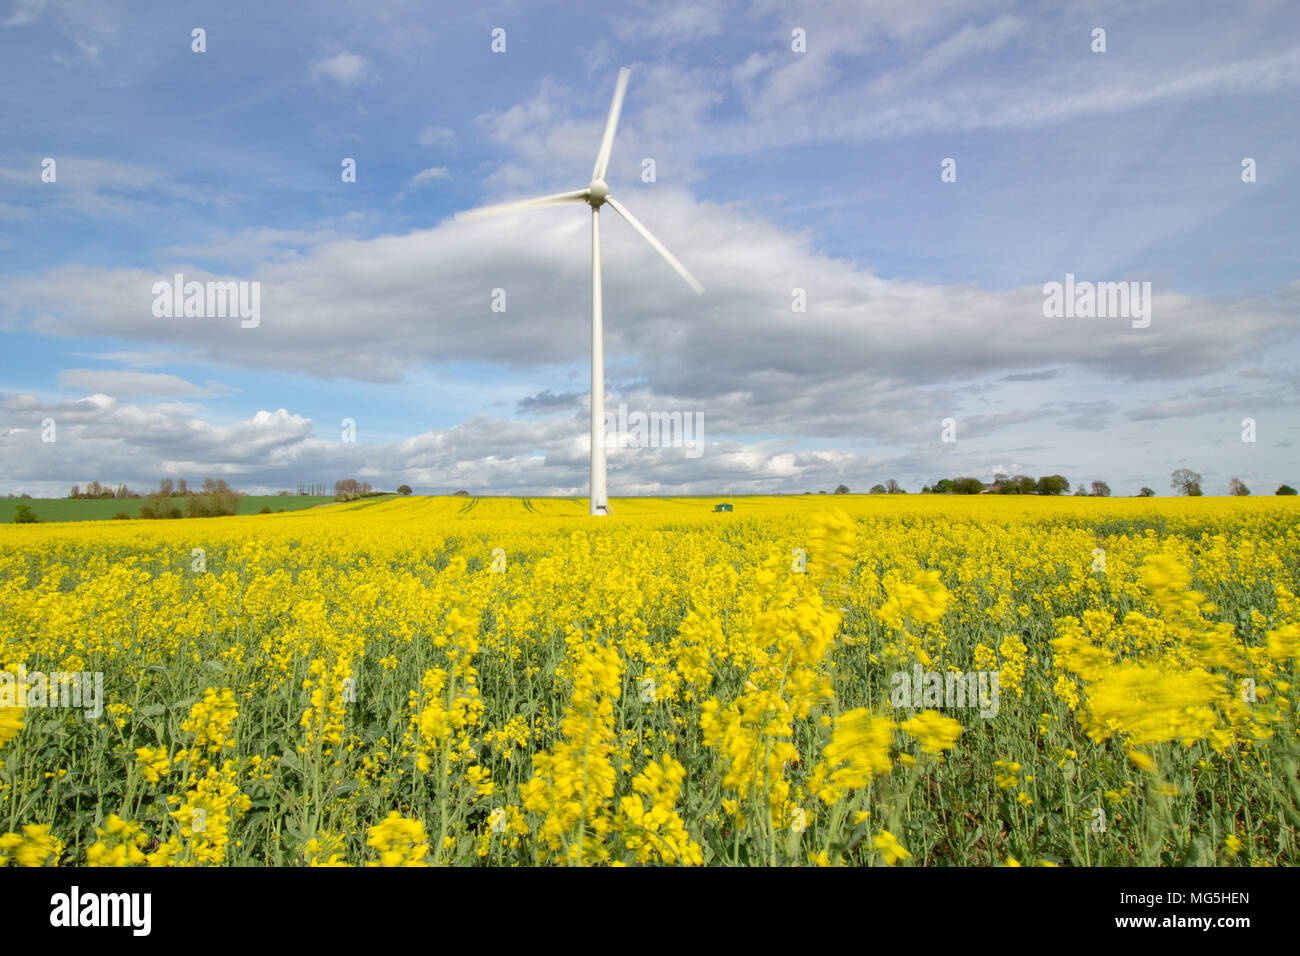 Una turbina eolica illustrata in campi di colza gialli nei campi vicino a Newark, Lincolnshire, Regno Unito Foto Stock